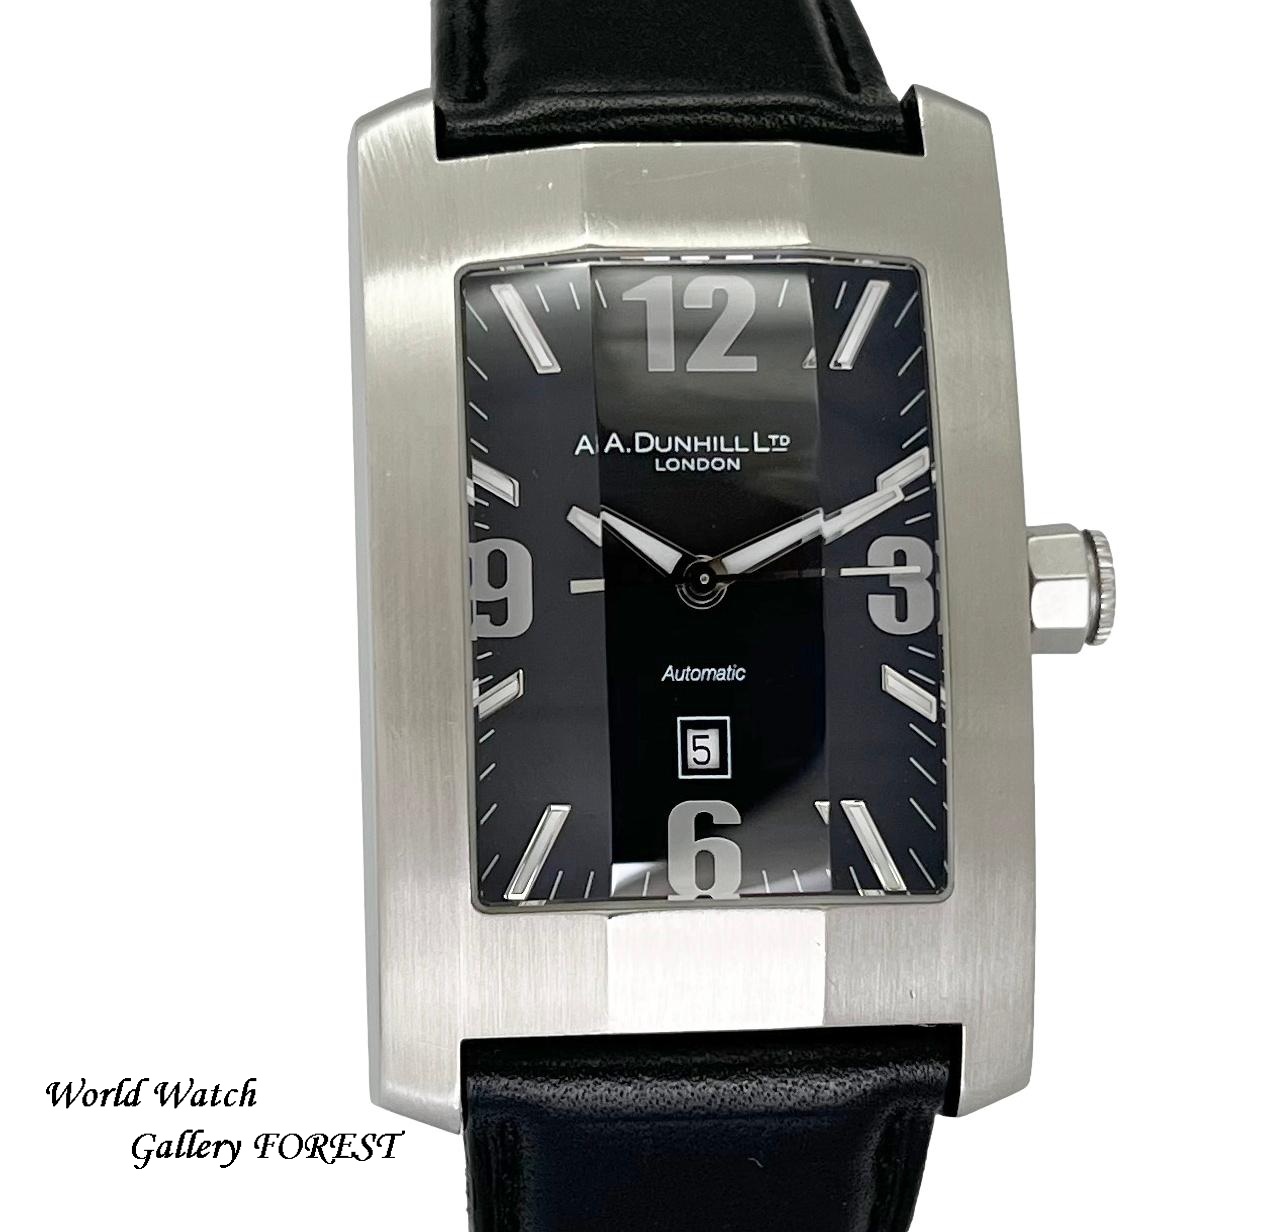 ダンヒル ダンヒリオン 8040 中古 メンズ腕時計 自動巻き ブラック文字盤